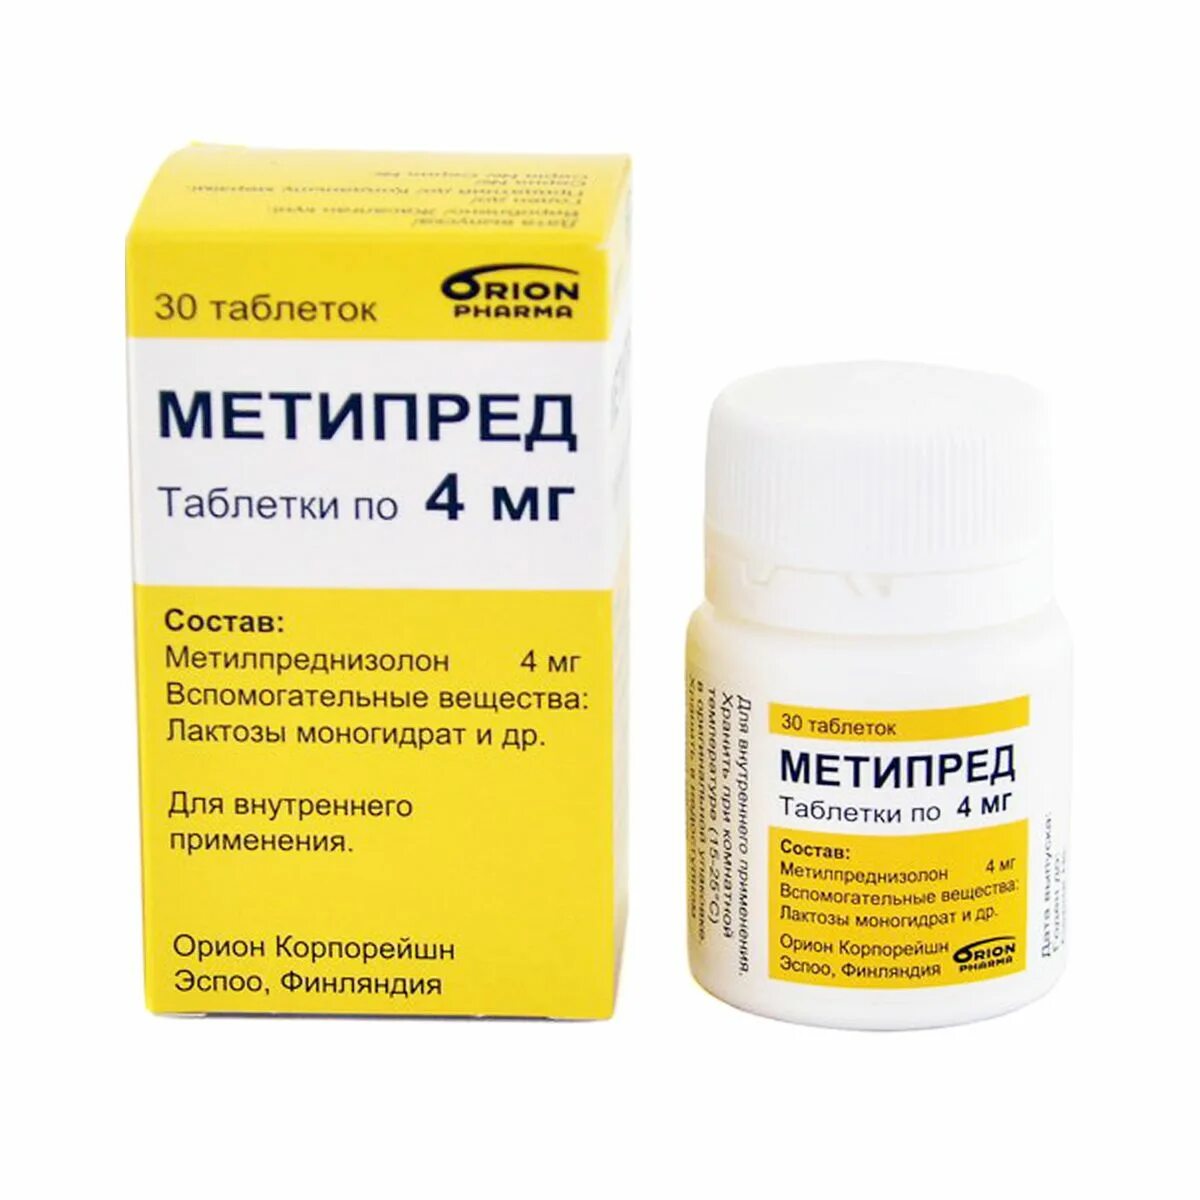 Метипред таблетки доставка. Метипред таблетки 4 мг. Метипред лиофилизат 250 мг. Метипред таблетки 4 мг, 30 шт. Орион Корпорейшн. Метипред 16 мг таблетки.